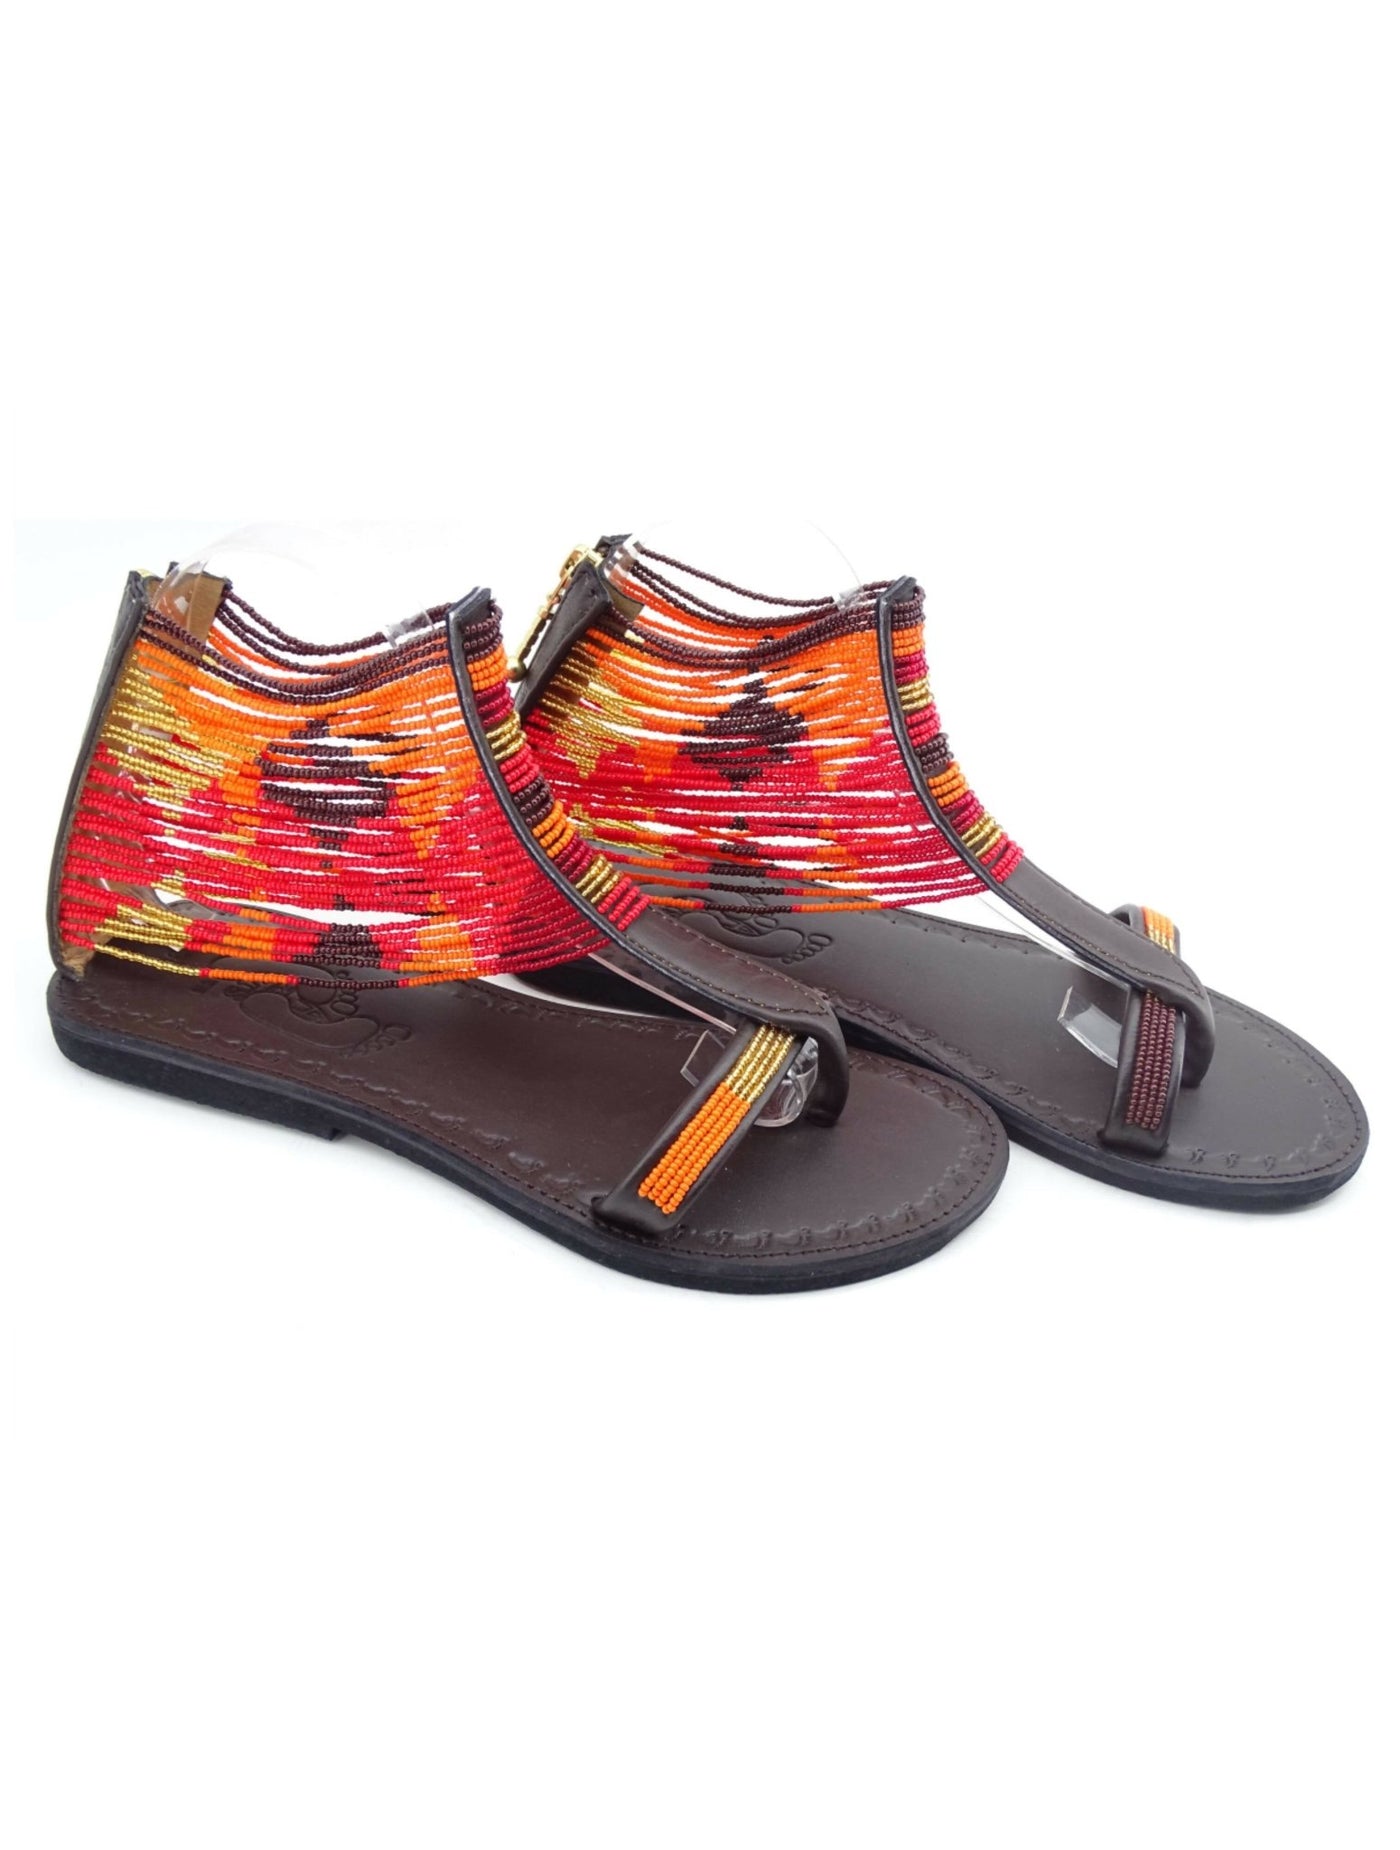 Azu Suzie Chain Zip Sandals - Chocolate / Orange / Red / Gold - Shopzetu